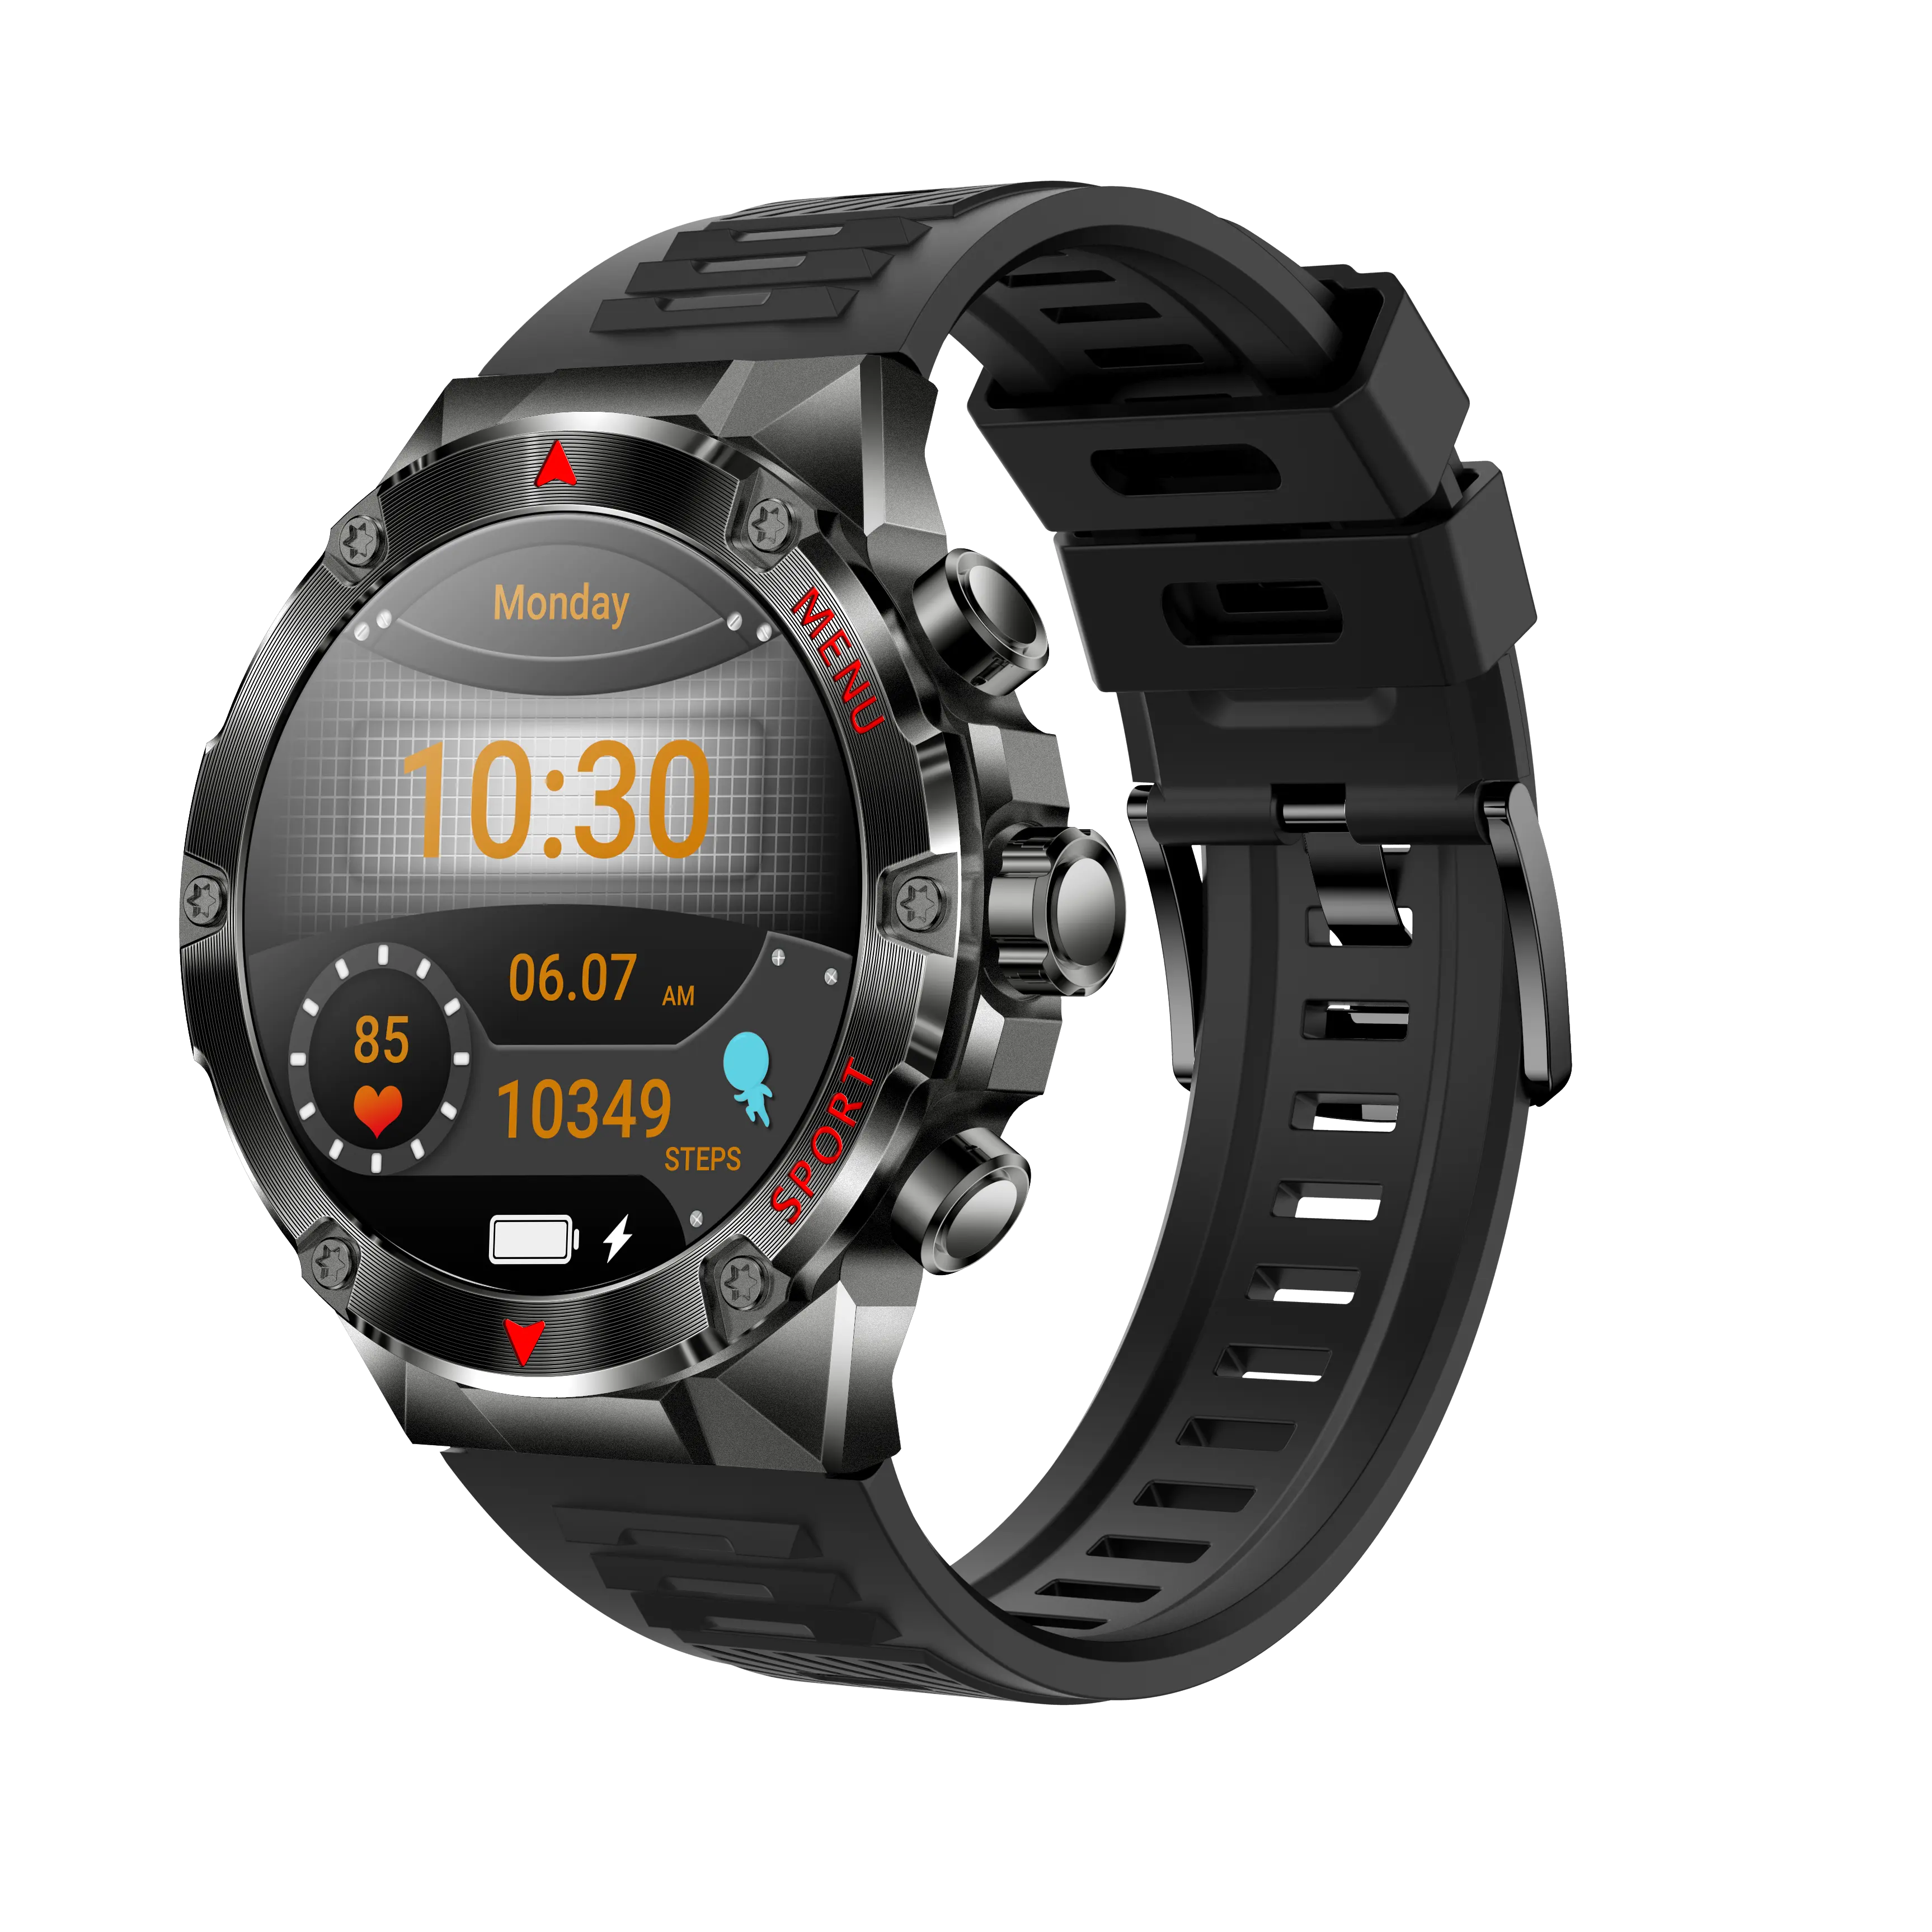 1.43 inç tam dokunmatik Hd renkli ekran tek dokunuşla çağrı Ip67 su geçirmez derece App programı kalp hızı sağlık izleme akıllı saat